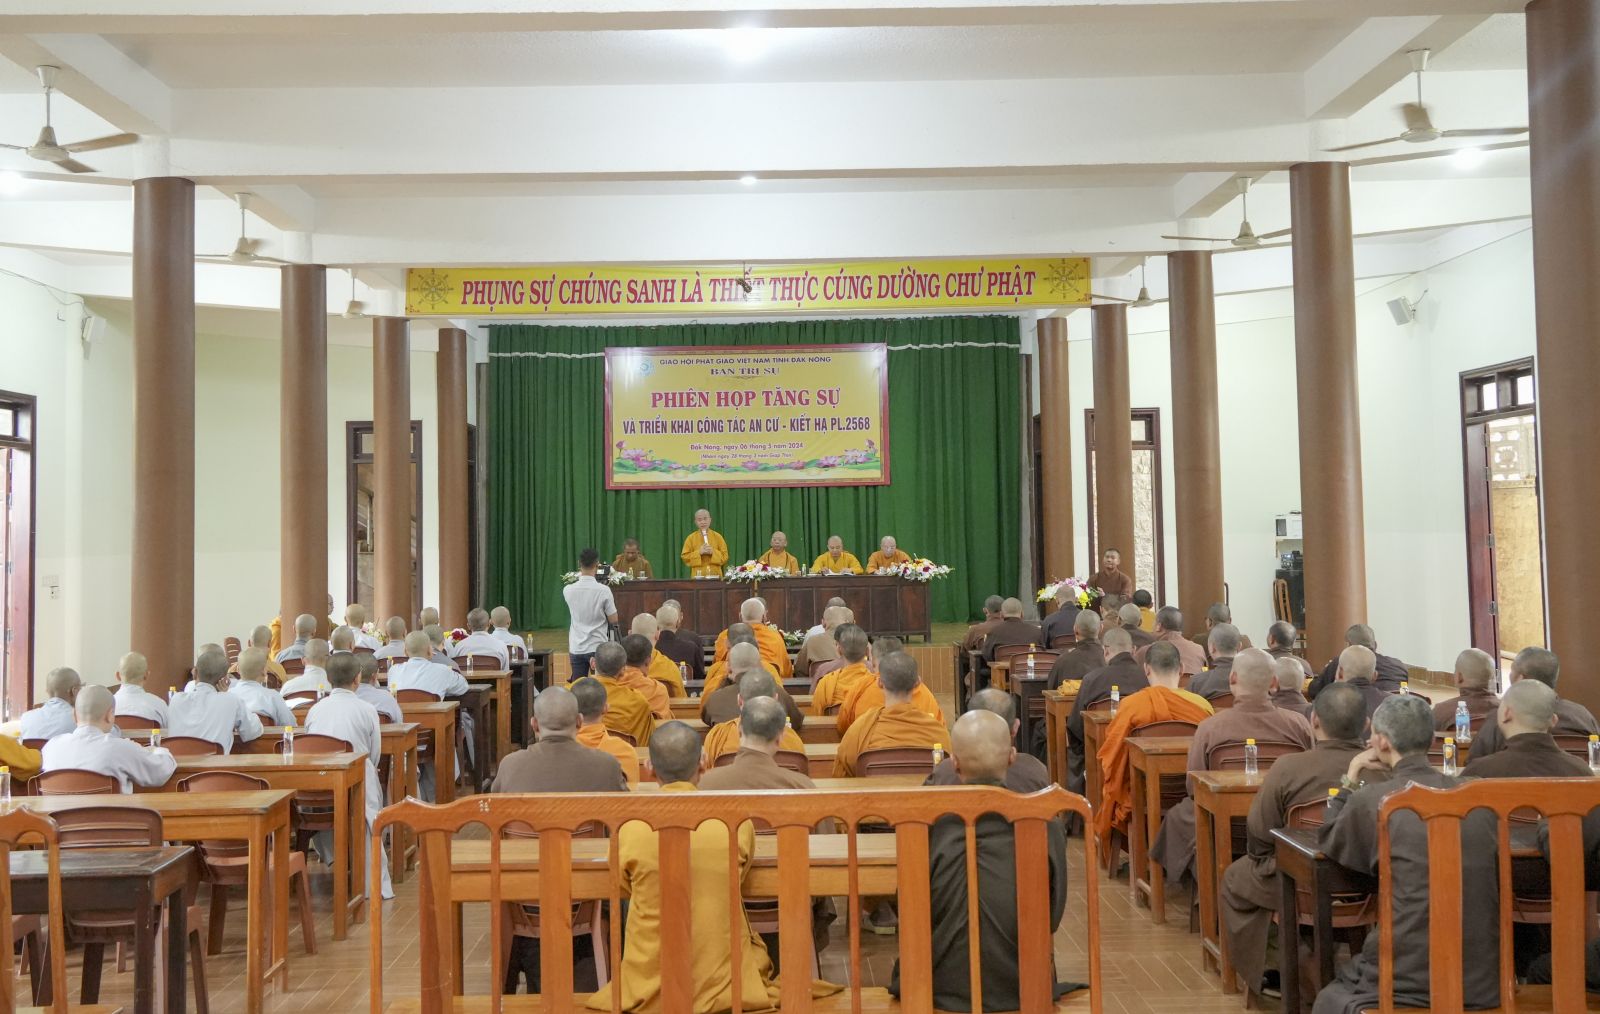 Phiên họp Tăng sự triển khai công tác Phật đản và An cư Kiết hạ PL.2568, cho toàn thể Tăng Ni trong tỉnh